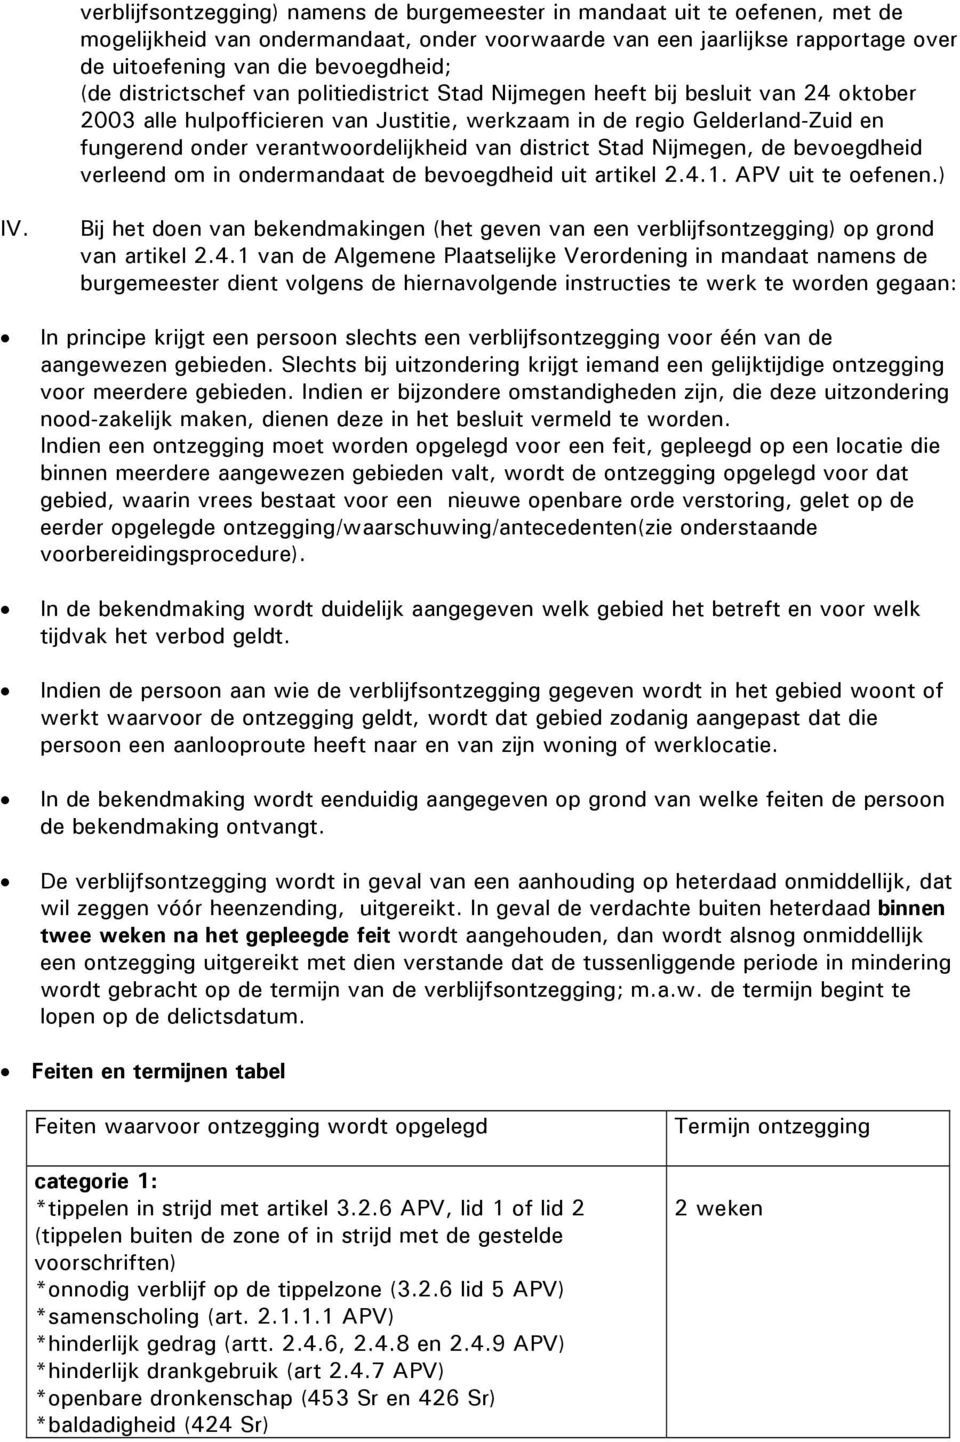 verantwoordelijkheid van district Stad Nijmegen, de bevoegdheid verleend om in ondermandaat de bevoegdheid uit artikel 2.4.1. APV uit te oefenen.) IV.